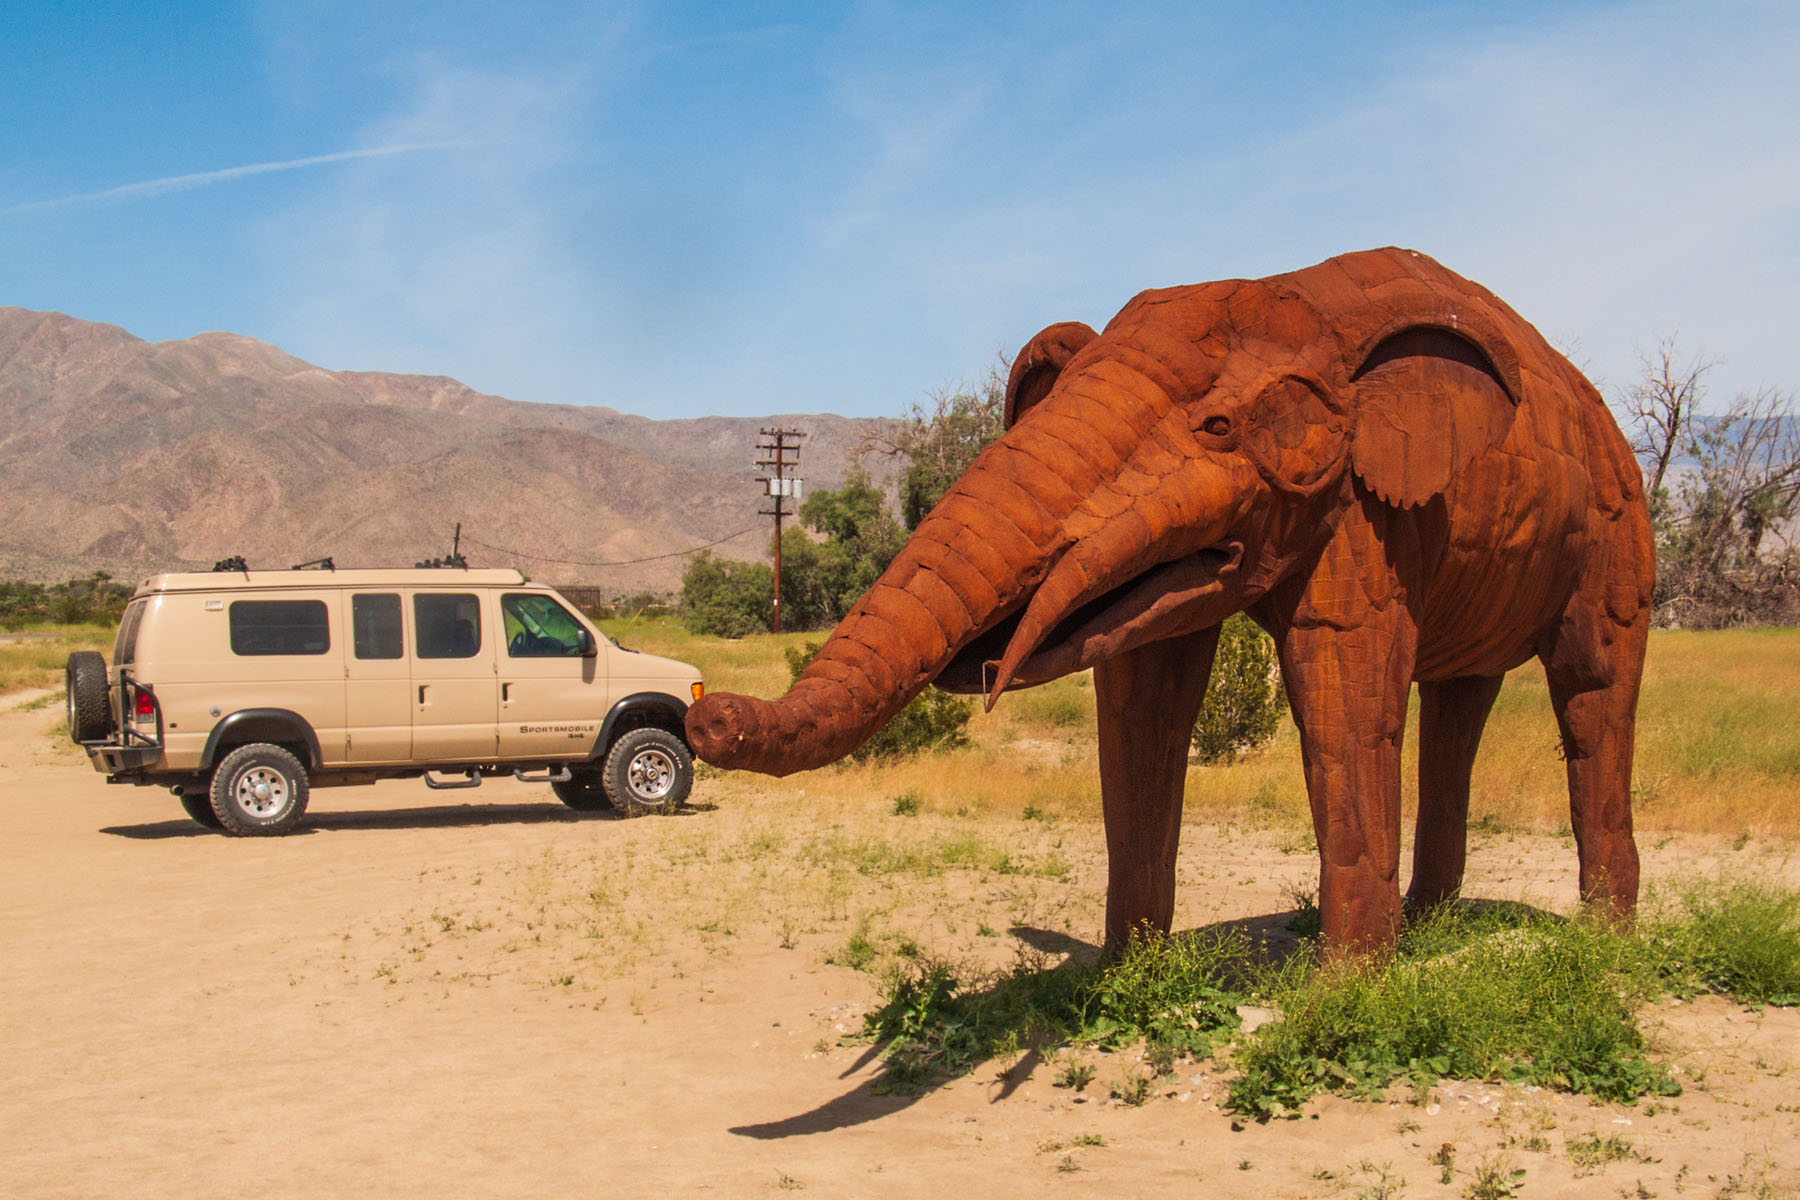 Sculpture in the desert, Borrego Springs, California.  Click for next photo.